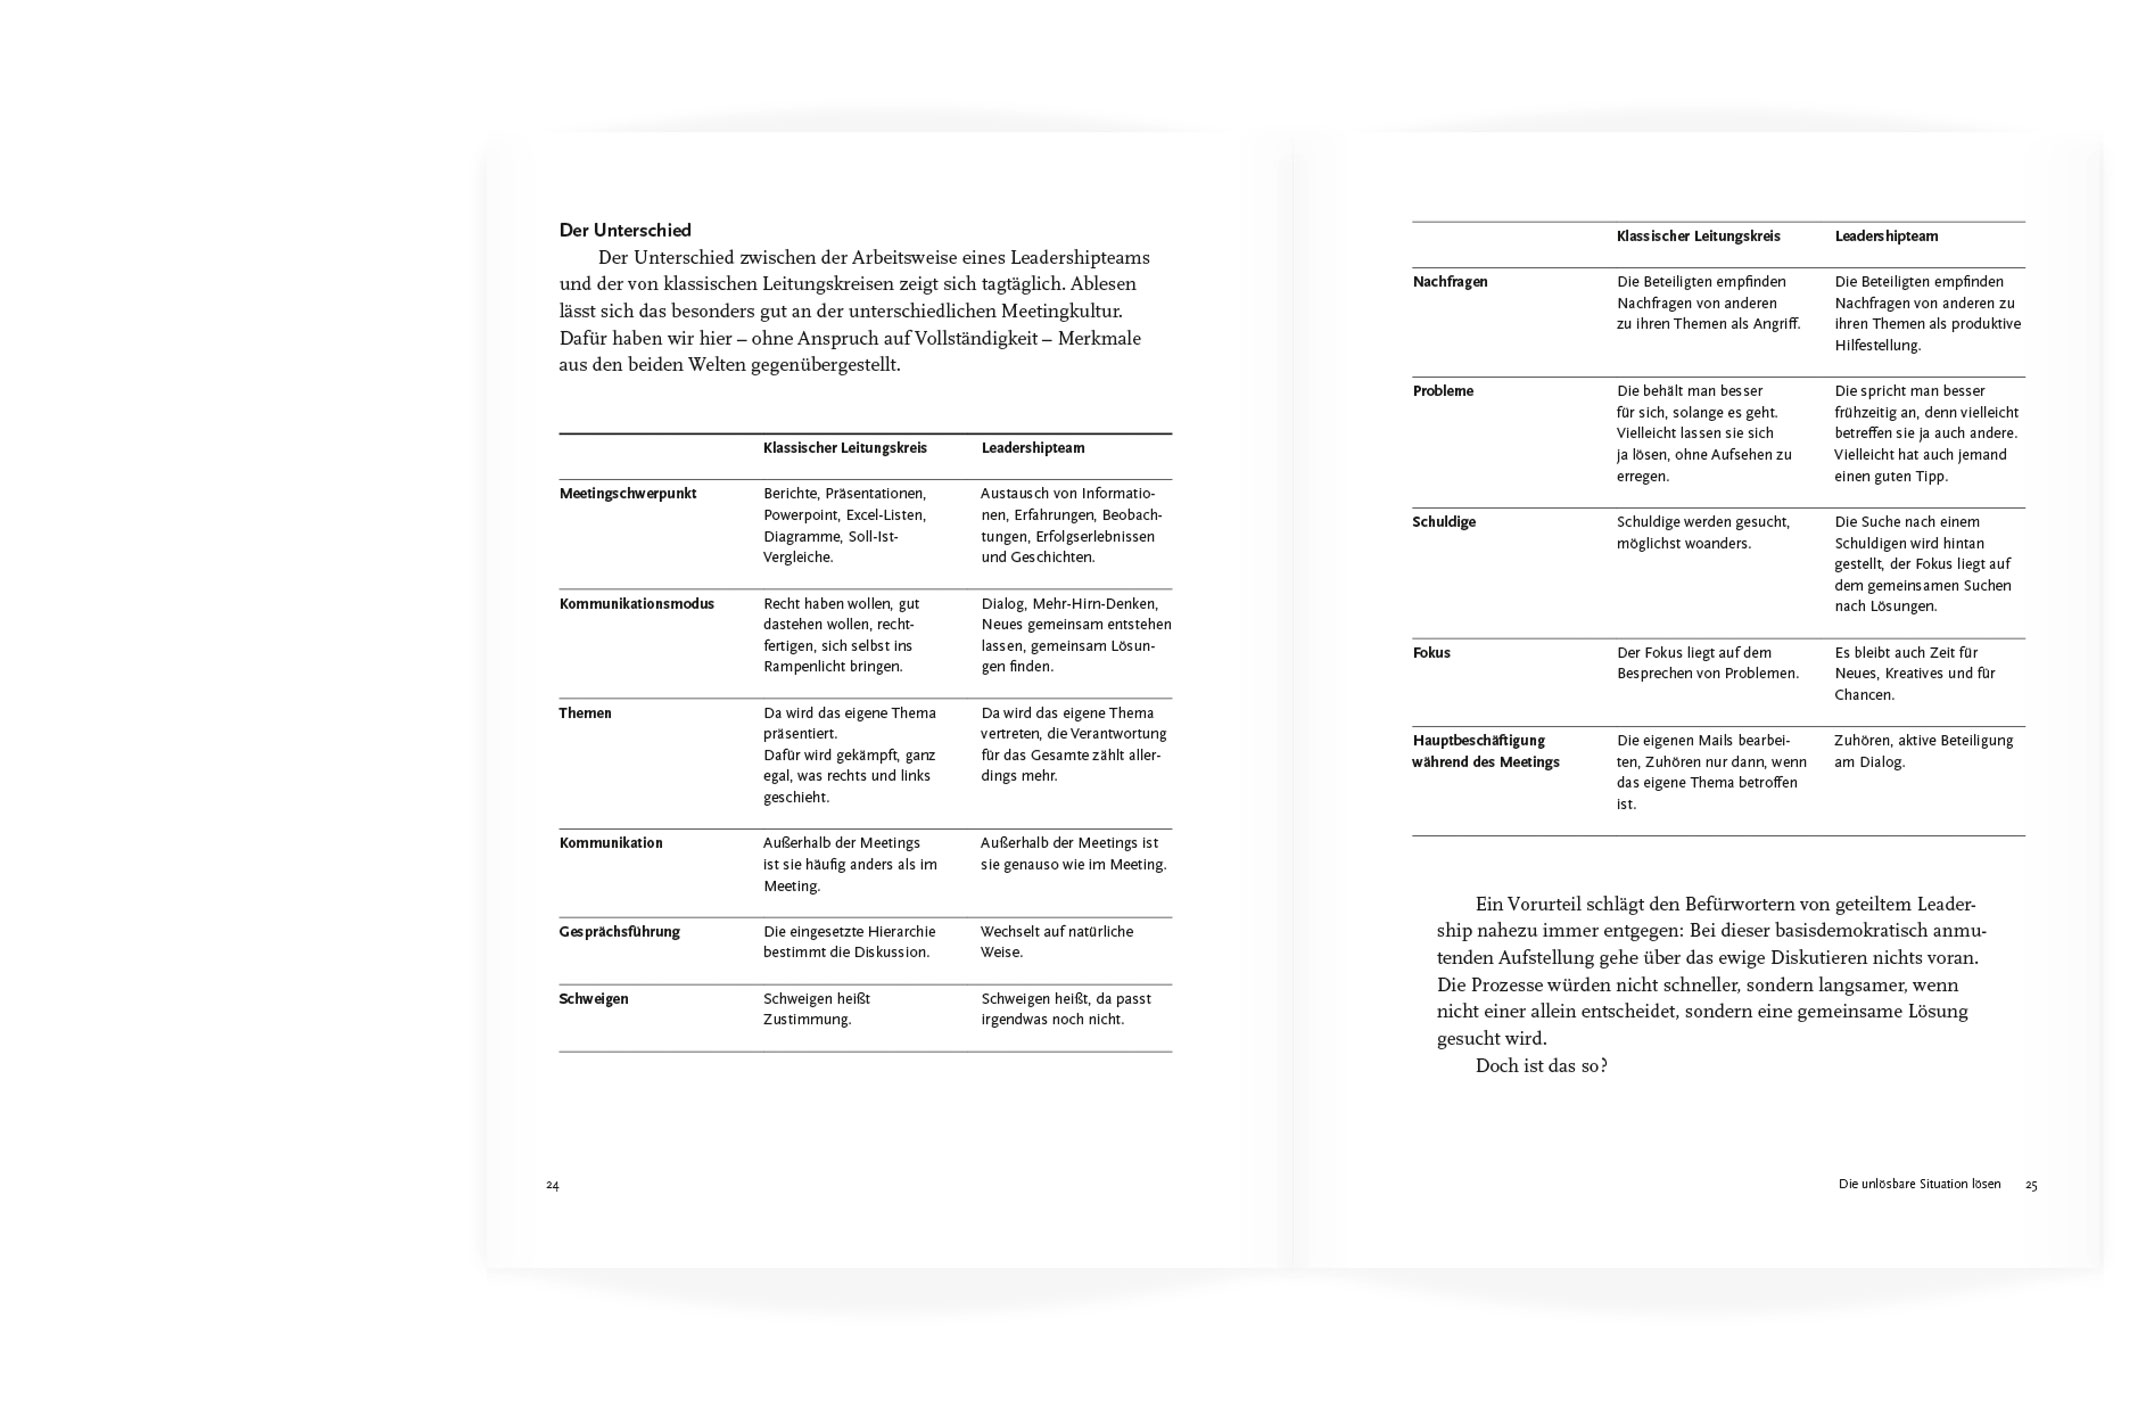 Buchgestaltung, Tabellensatz, »Die Kraft der Leadership Teams« von Rainer Petek, Herbert Schreib, Werner Bein und Florian Pichler